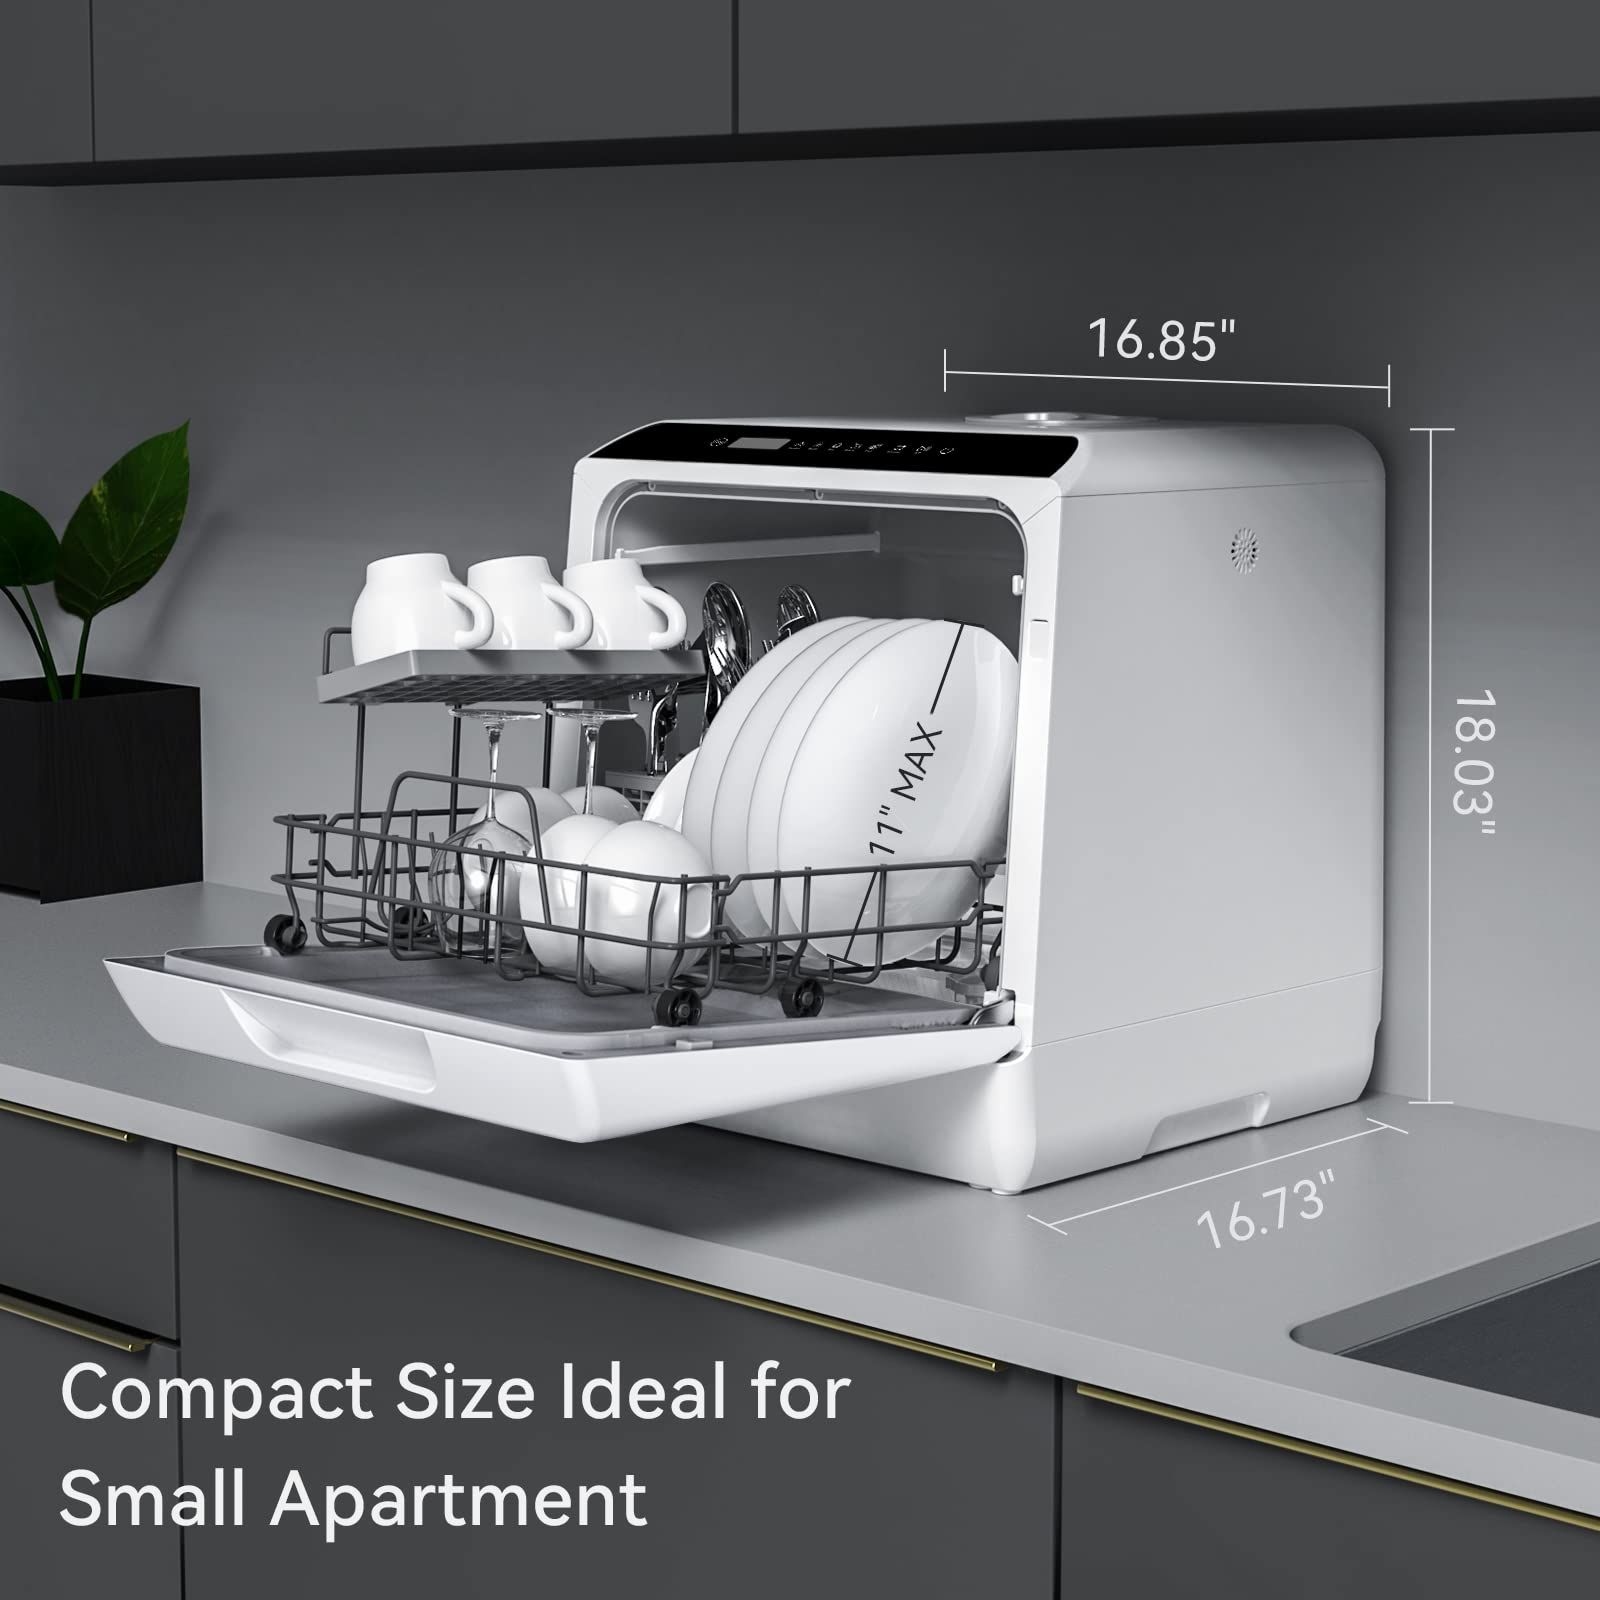 Cheap Portable Dishwashers Under $200 to Reduce Work Burden